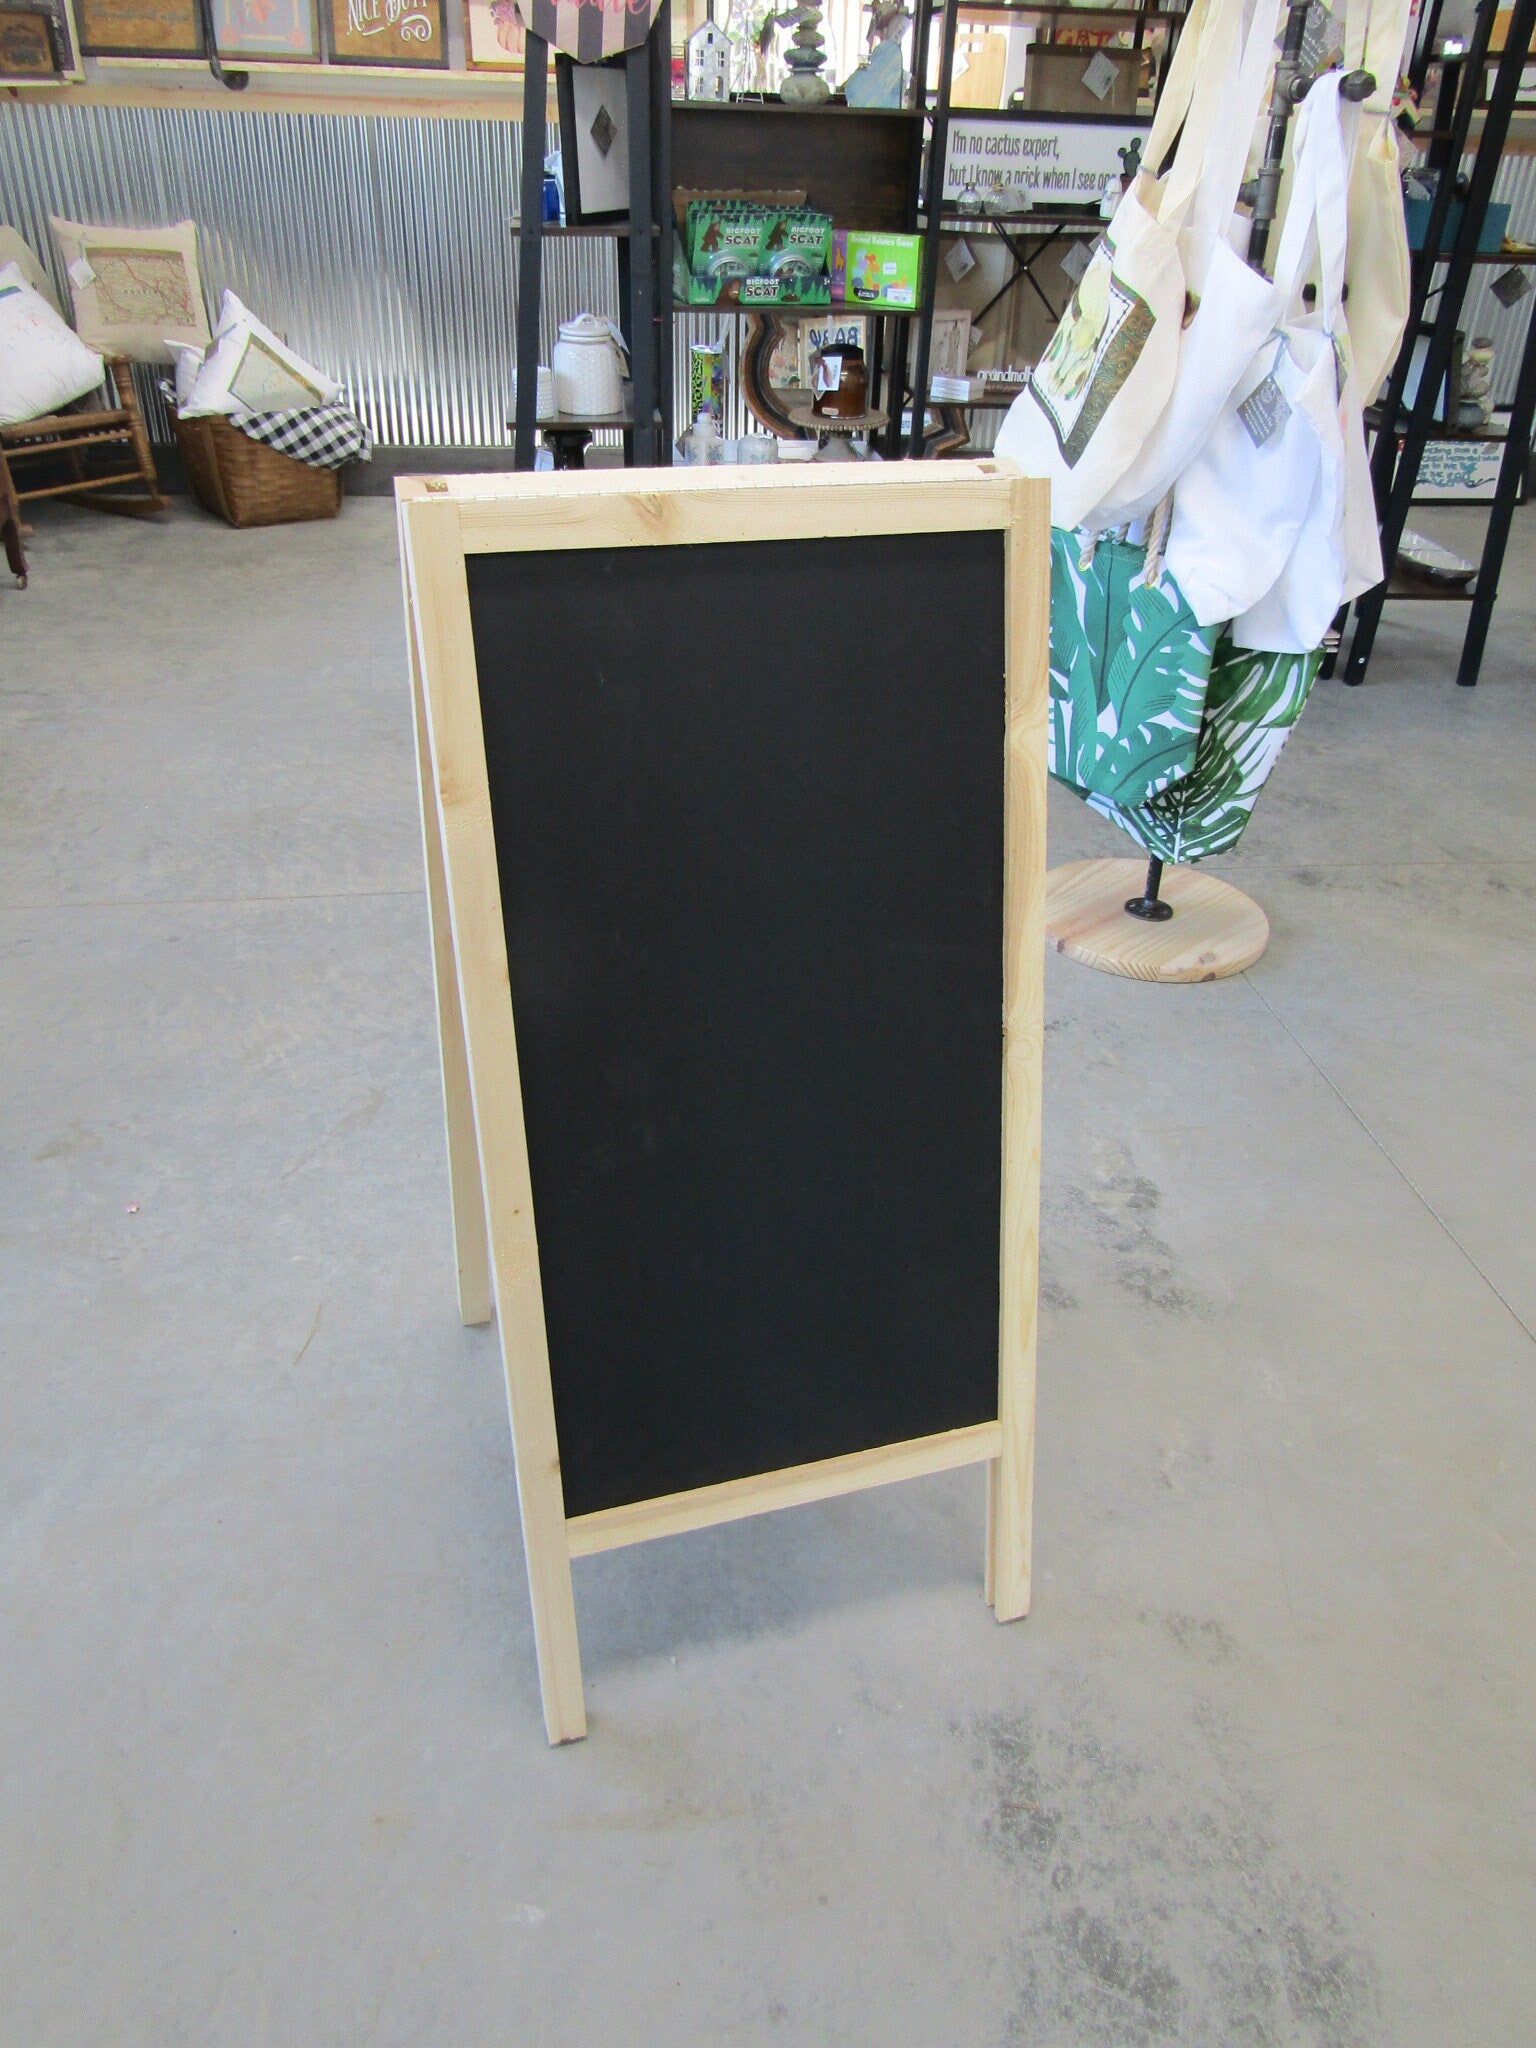 Chalk Board Daily Specials Sidewalk Sandwich Board A Frame Folding